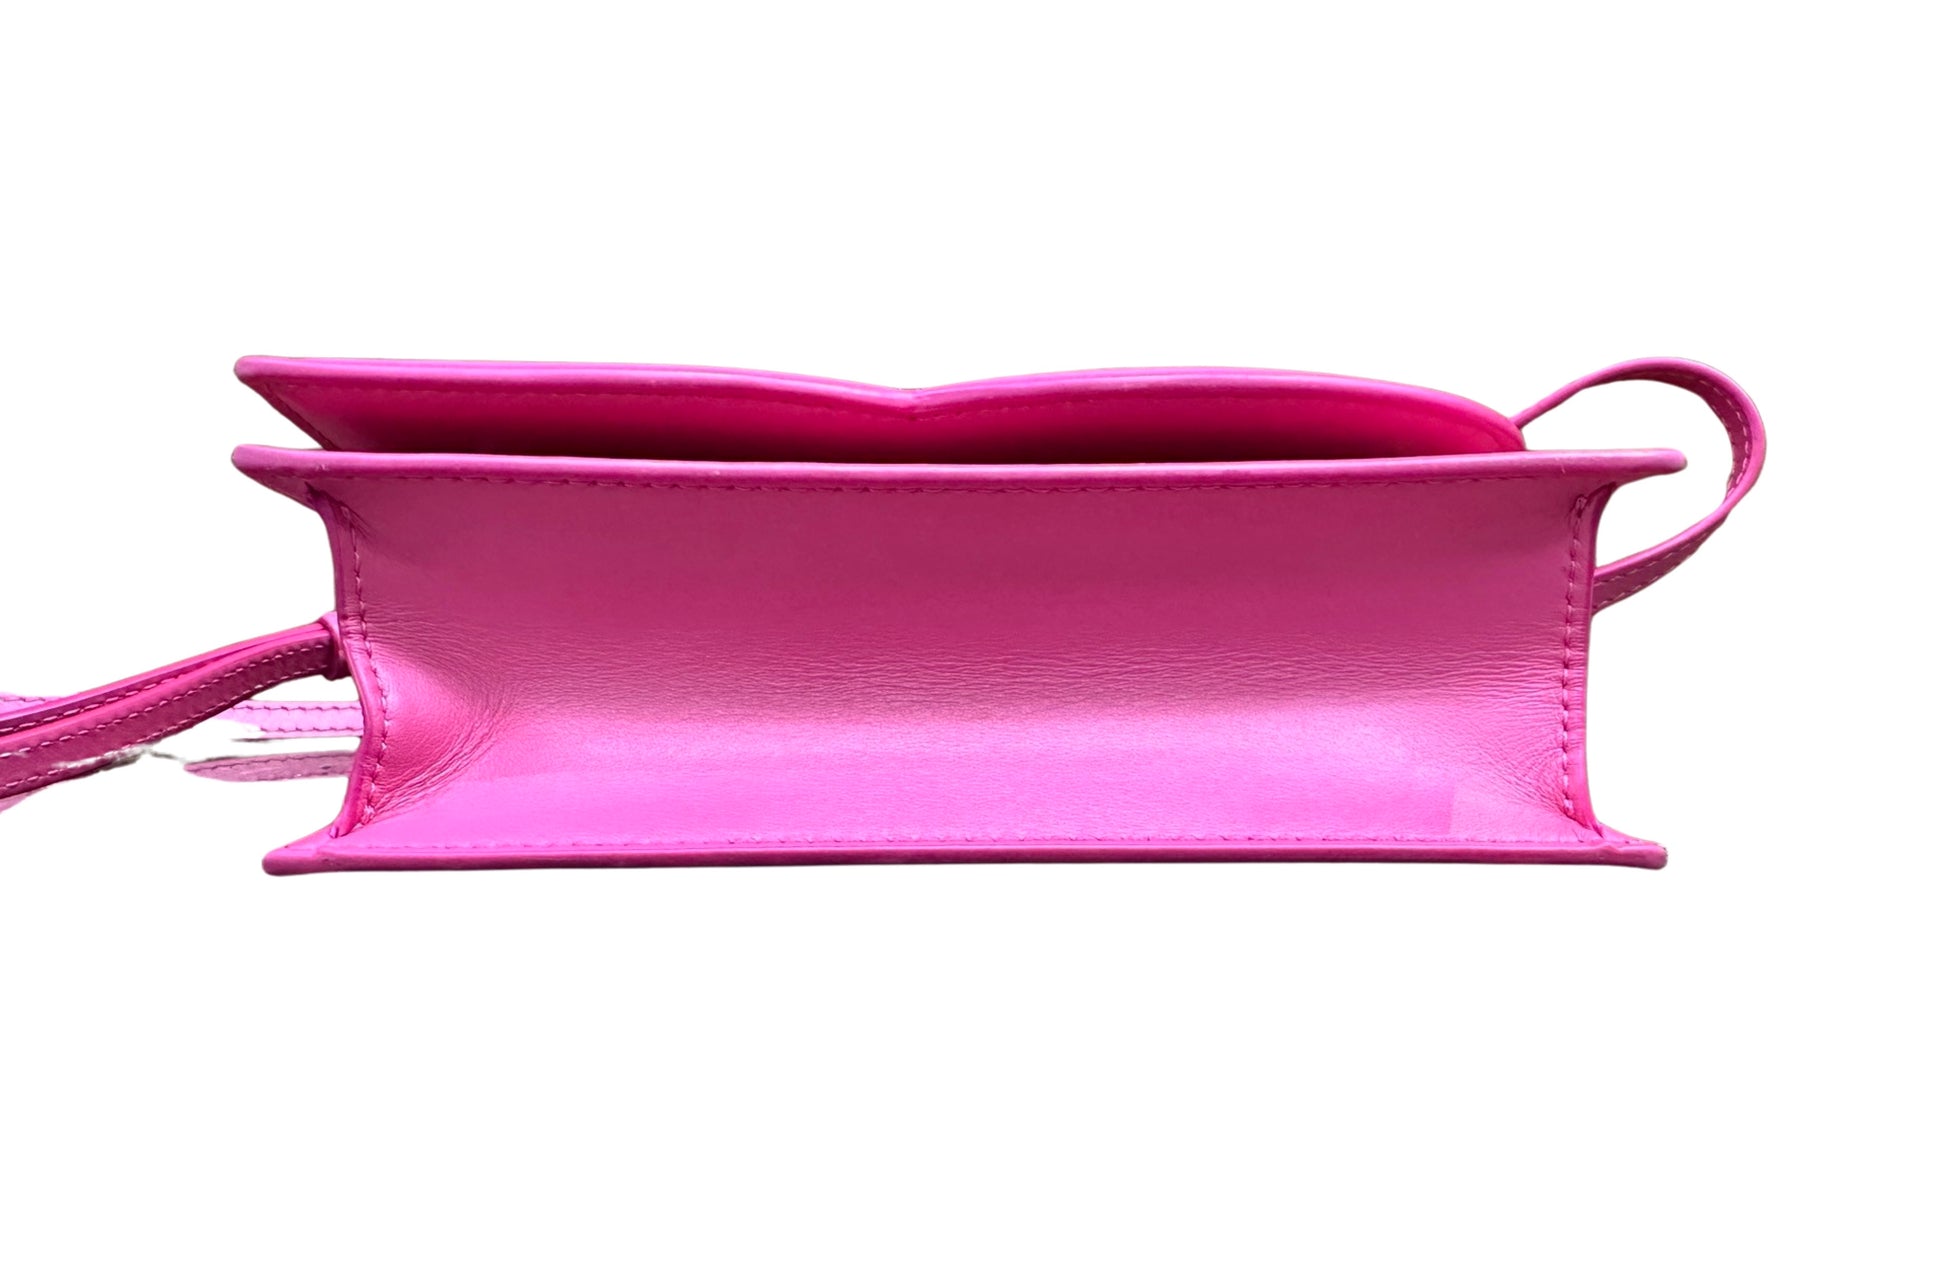 Bottom of pink bag